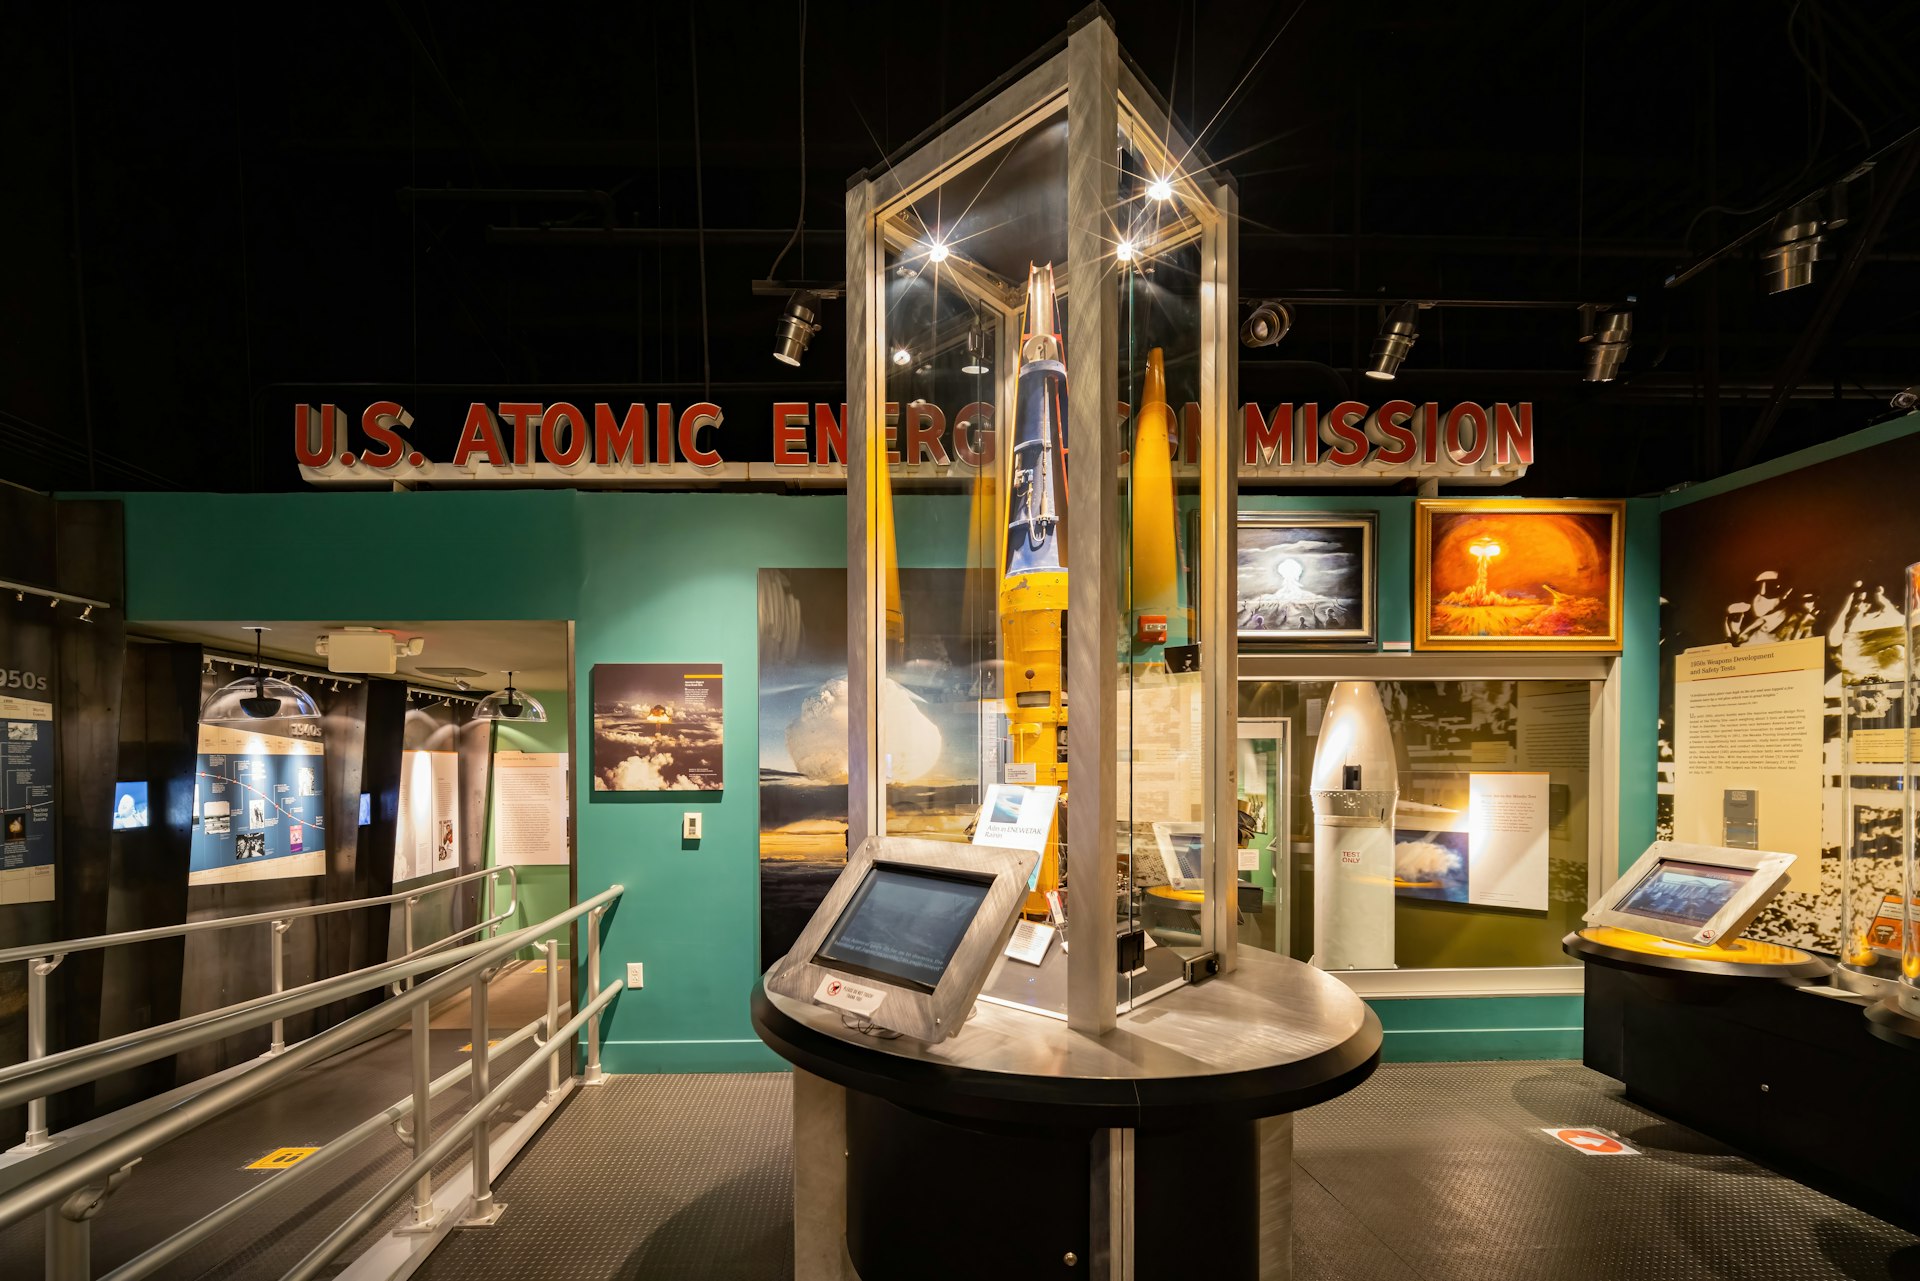 Uma exposição de museu mostrando um item semelhante a um foguete em uma caixa de vidro